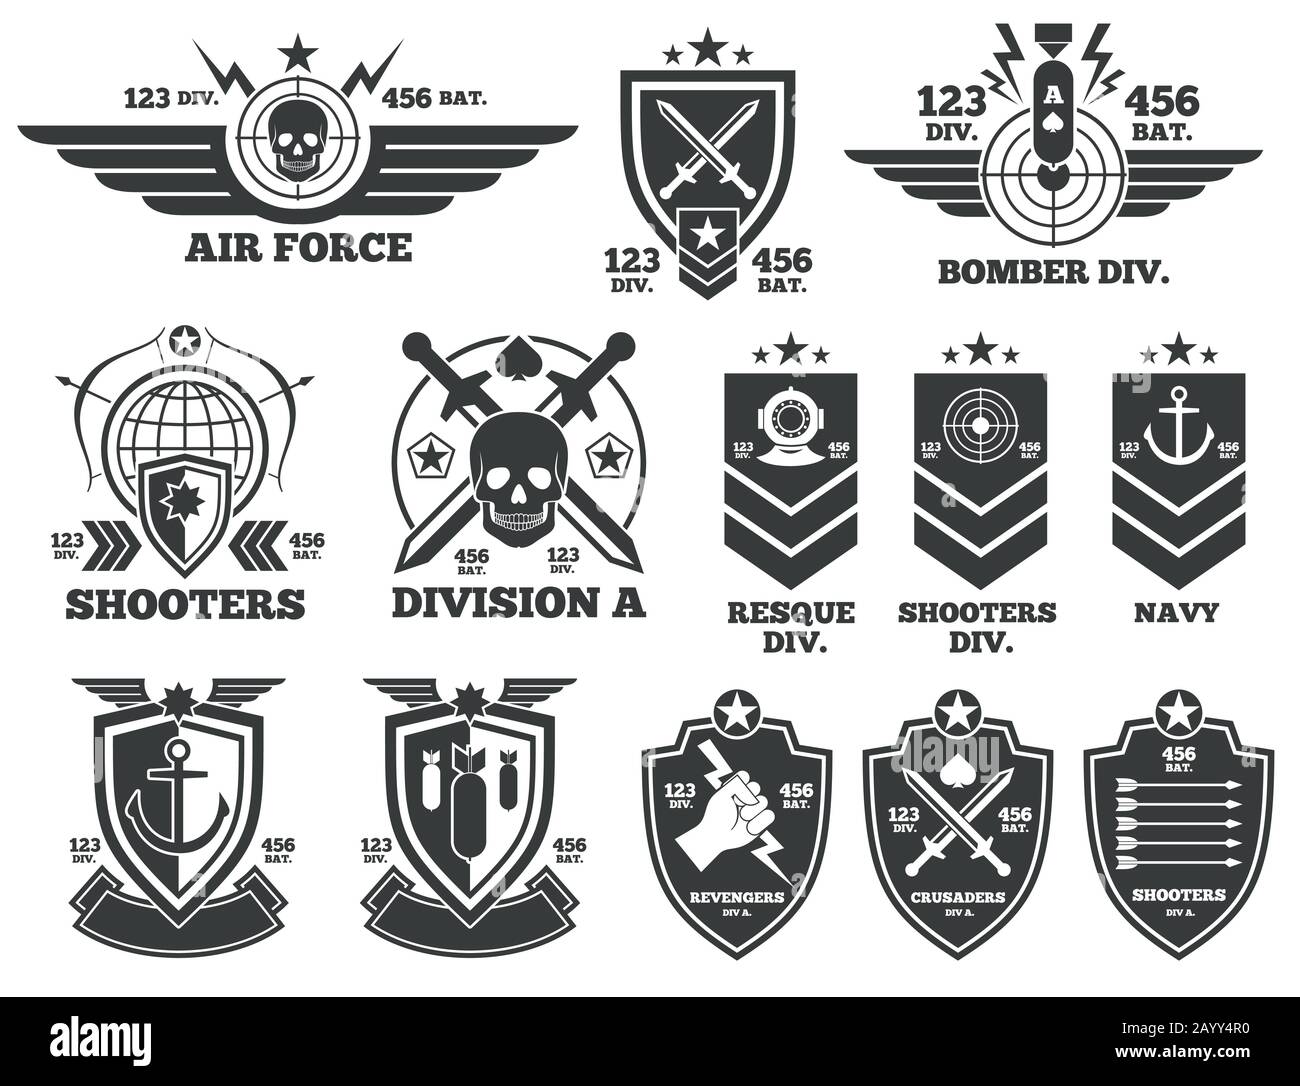 Militärabzeichen Stock-Vektorgrafiken kaufen - Alamy